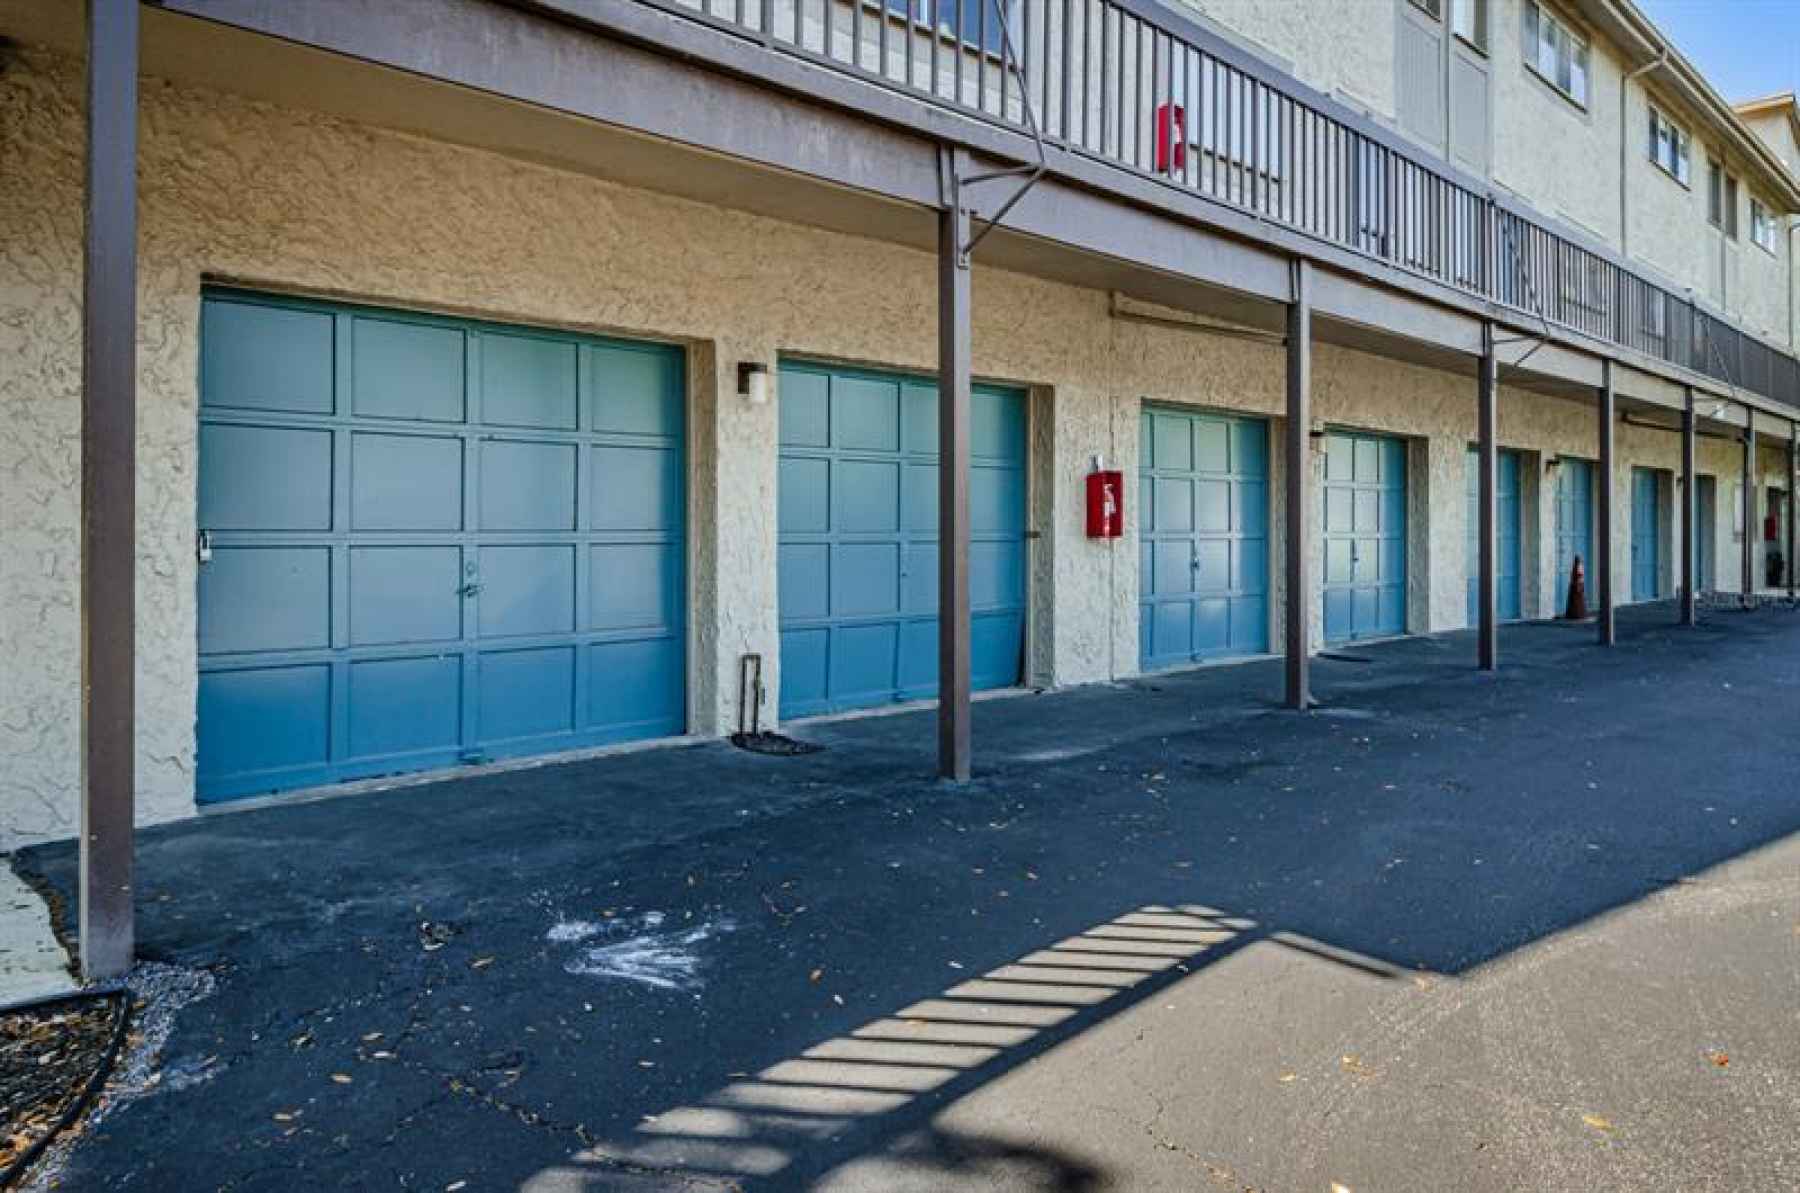 Parking Garage - Left Most Garage Door